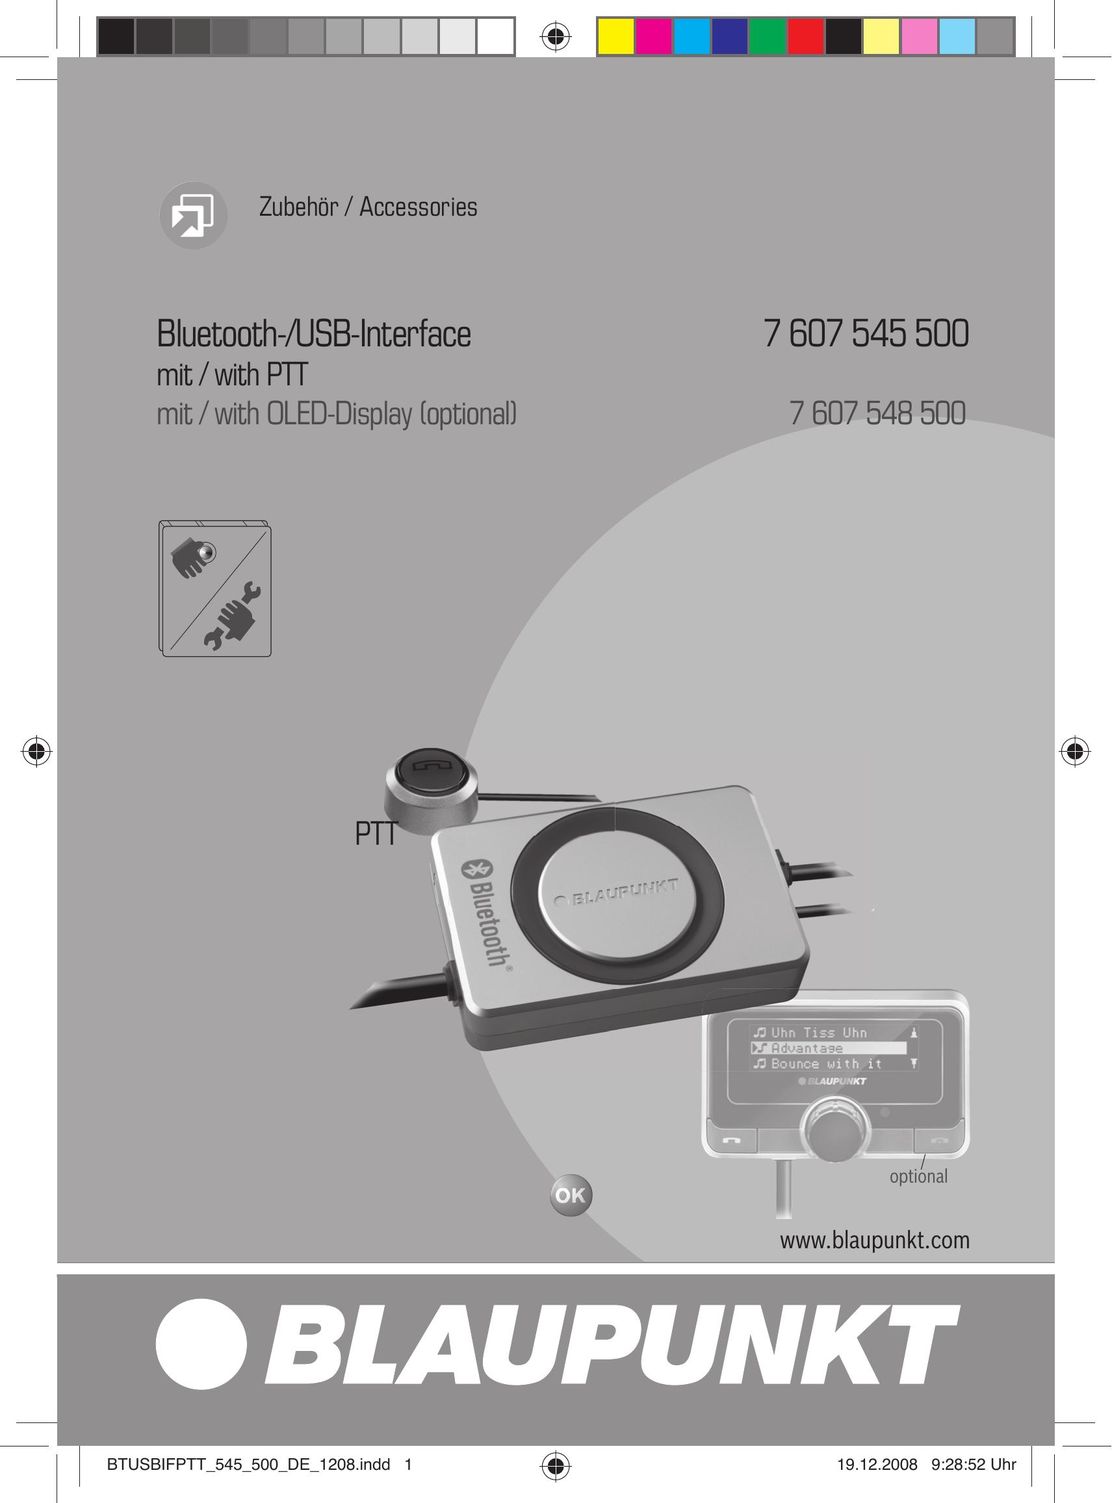 Blaupunkt 7607545500 Network Card User Manual